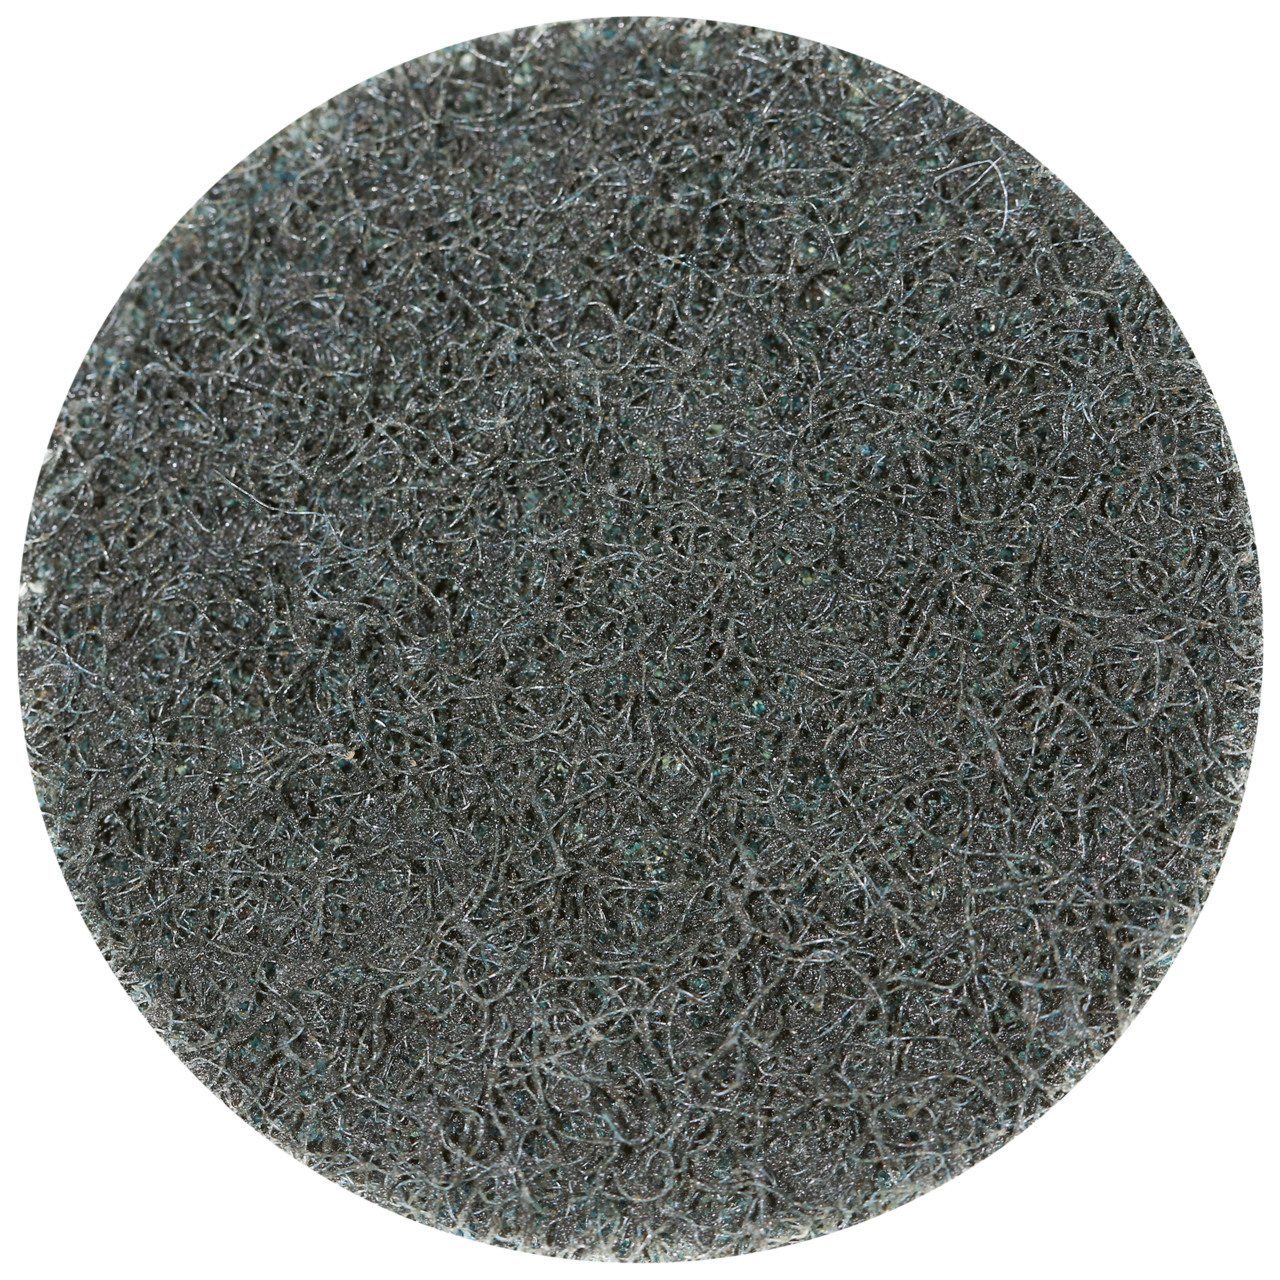 Tyrolit SCM QUICK CHANGE DISC Dimensione 50xS Per acciaio, acciaio inox, metalli non ferrosi, plastica e legno, MOLTO FINE, forma: QDISC, Art. 112591